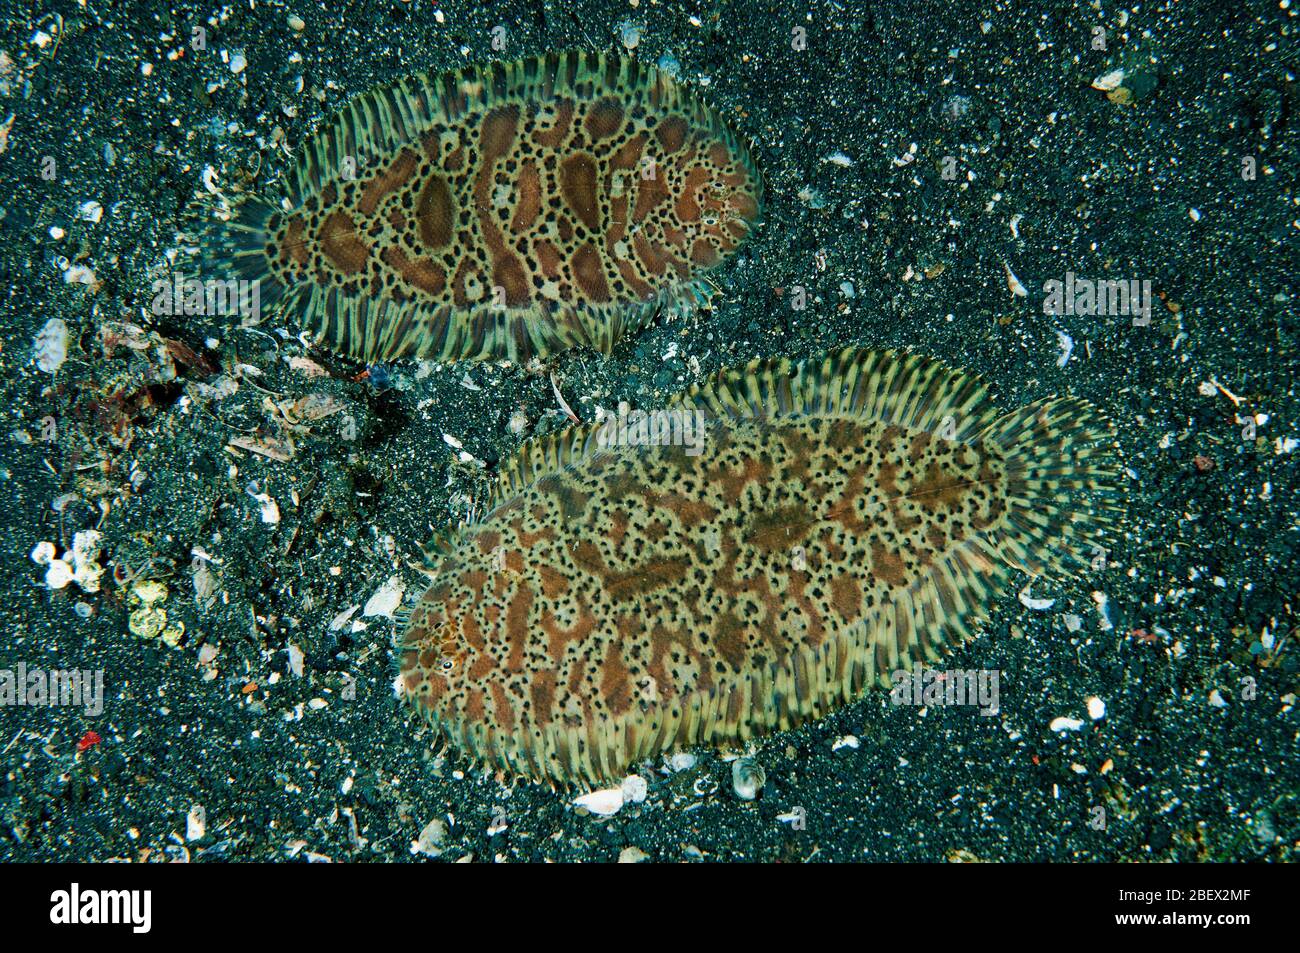 Suole per tappeti, Liachirus melanospilus, Sulawesi Indonesia. Foto Stock